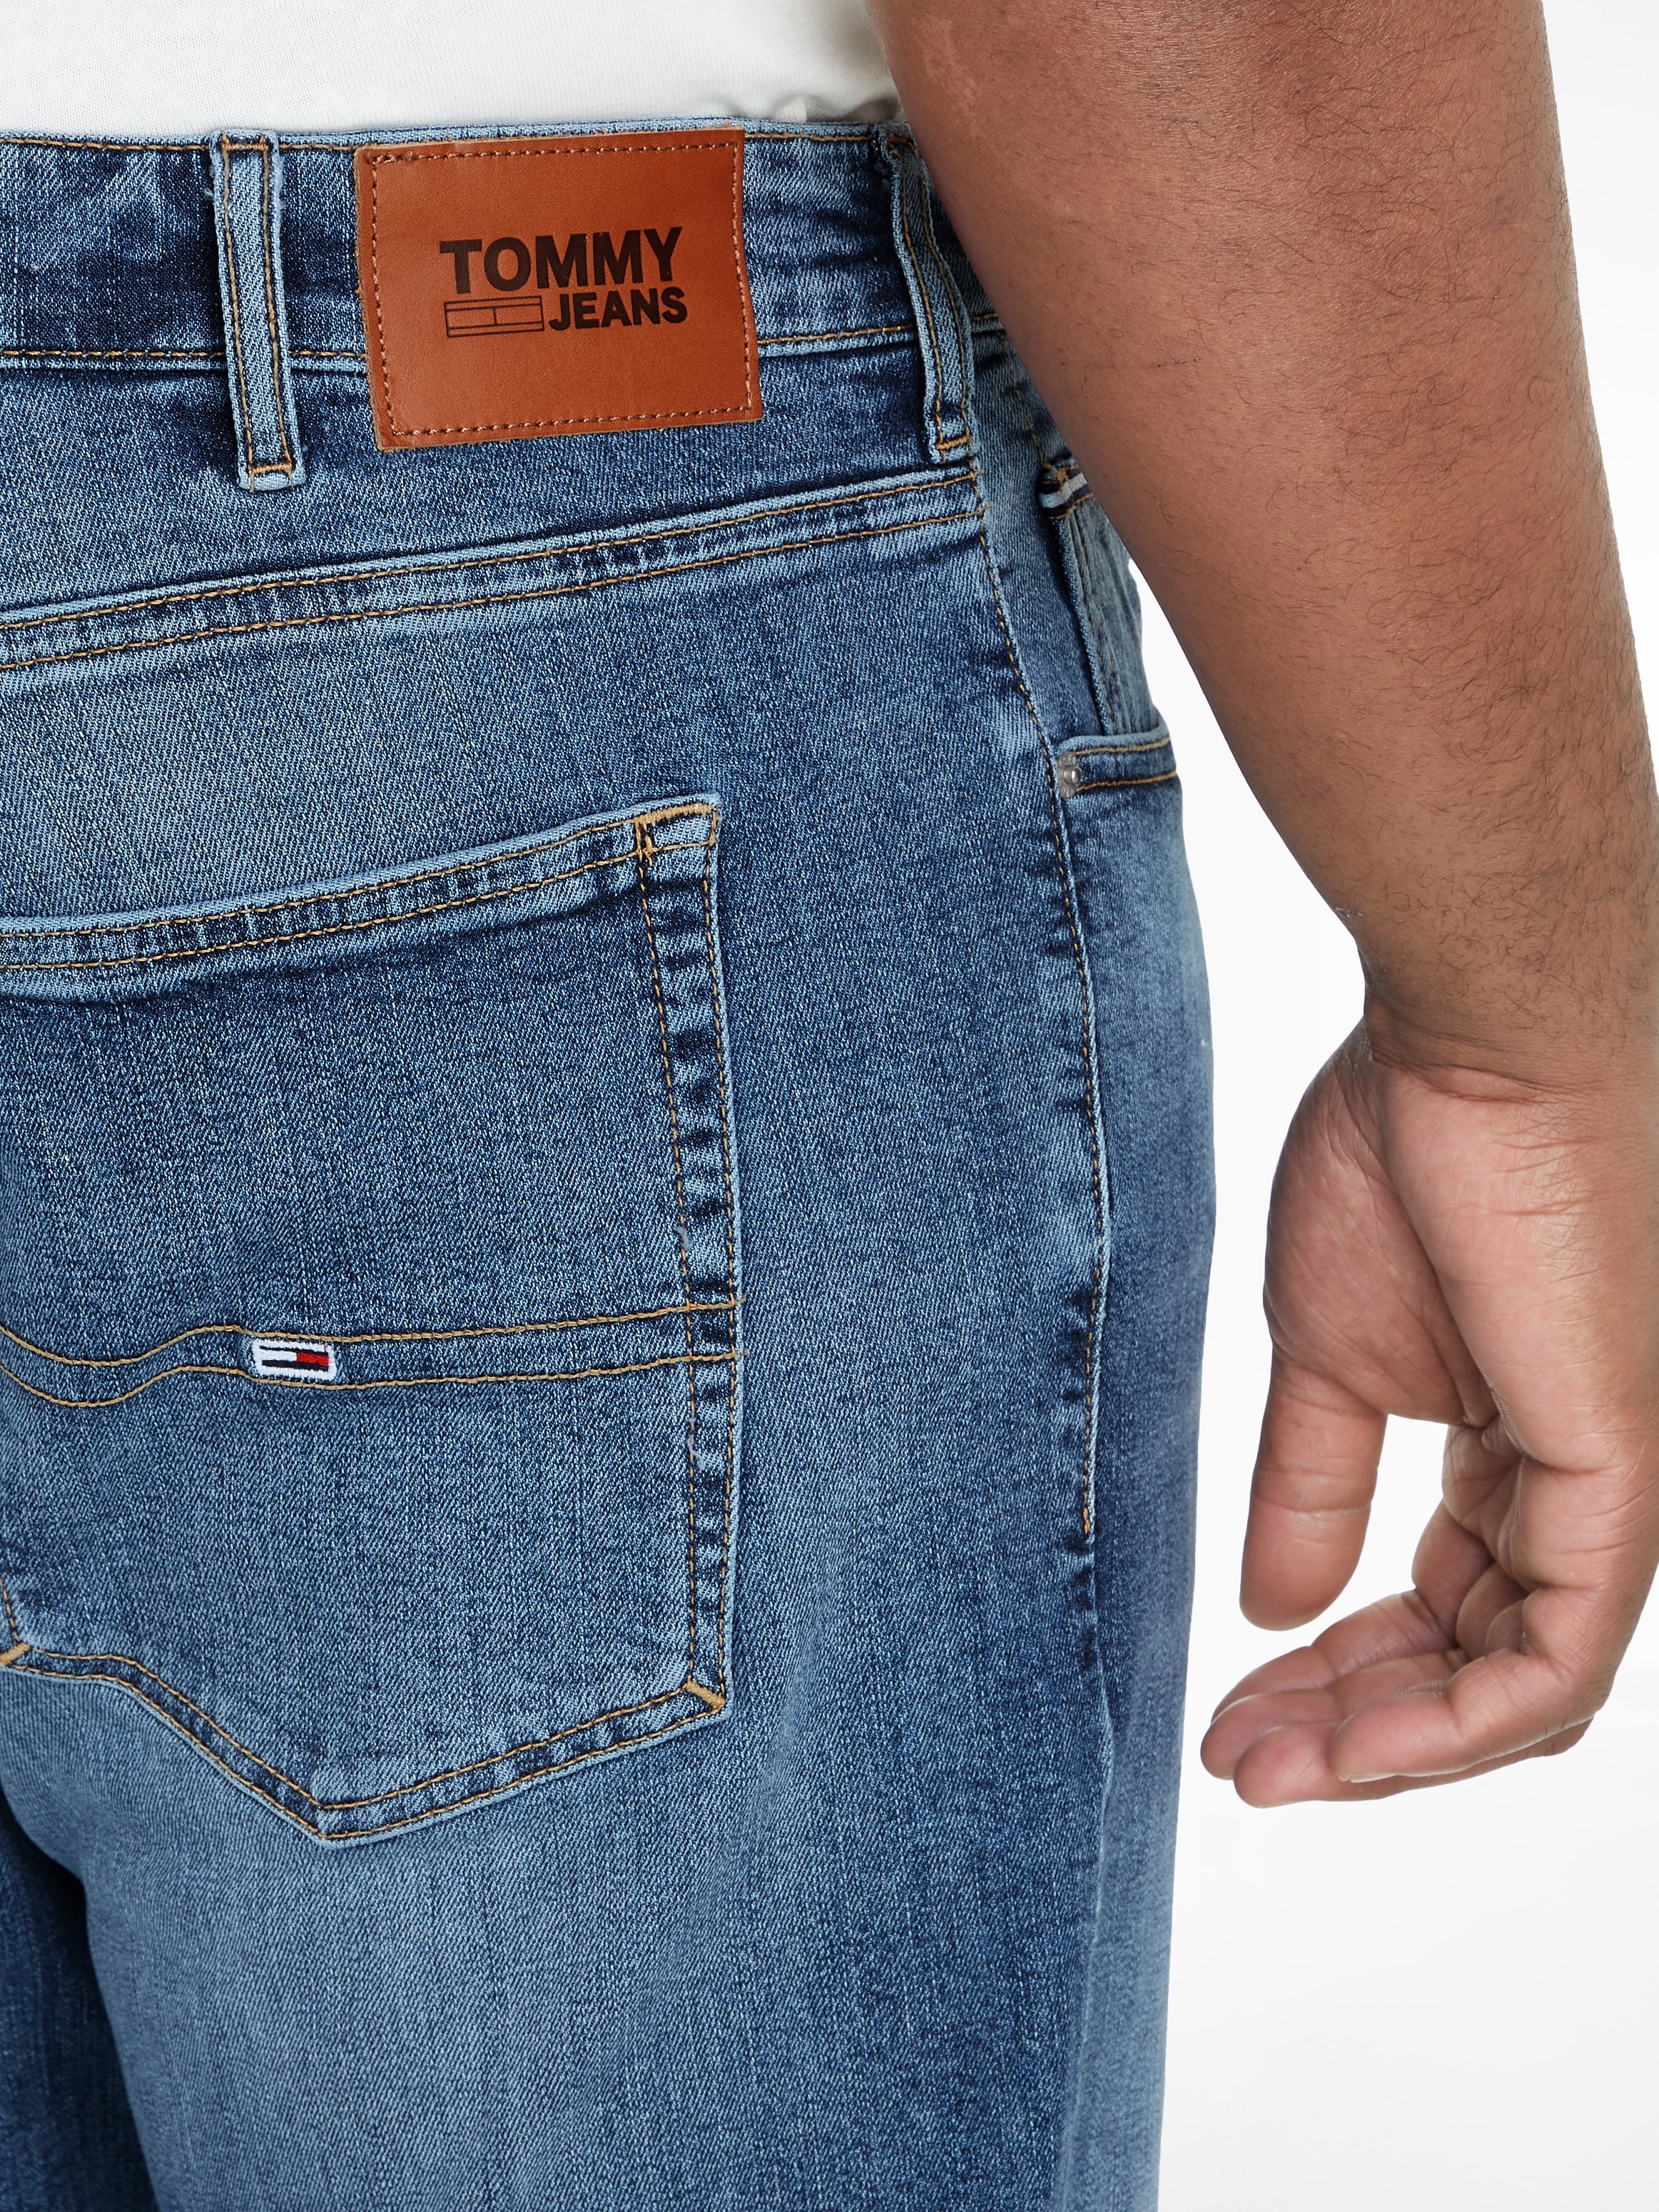 online Tommy DG1219«, großen Plus Jeans »AUSTIN 5-Pocket-Jeans PLUS in bestellen Größen